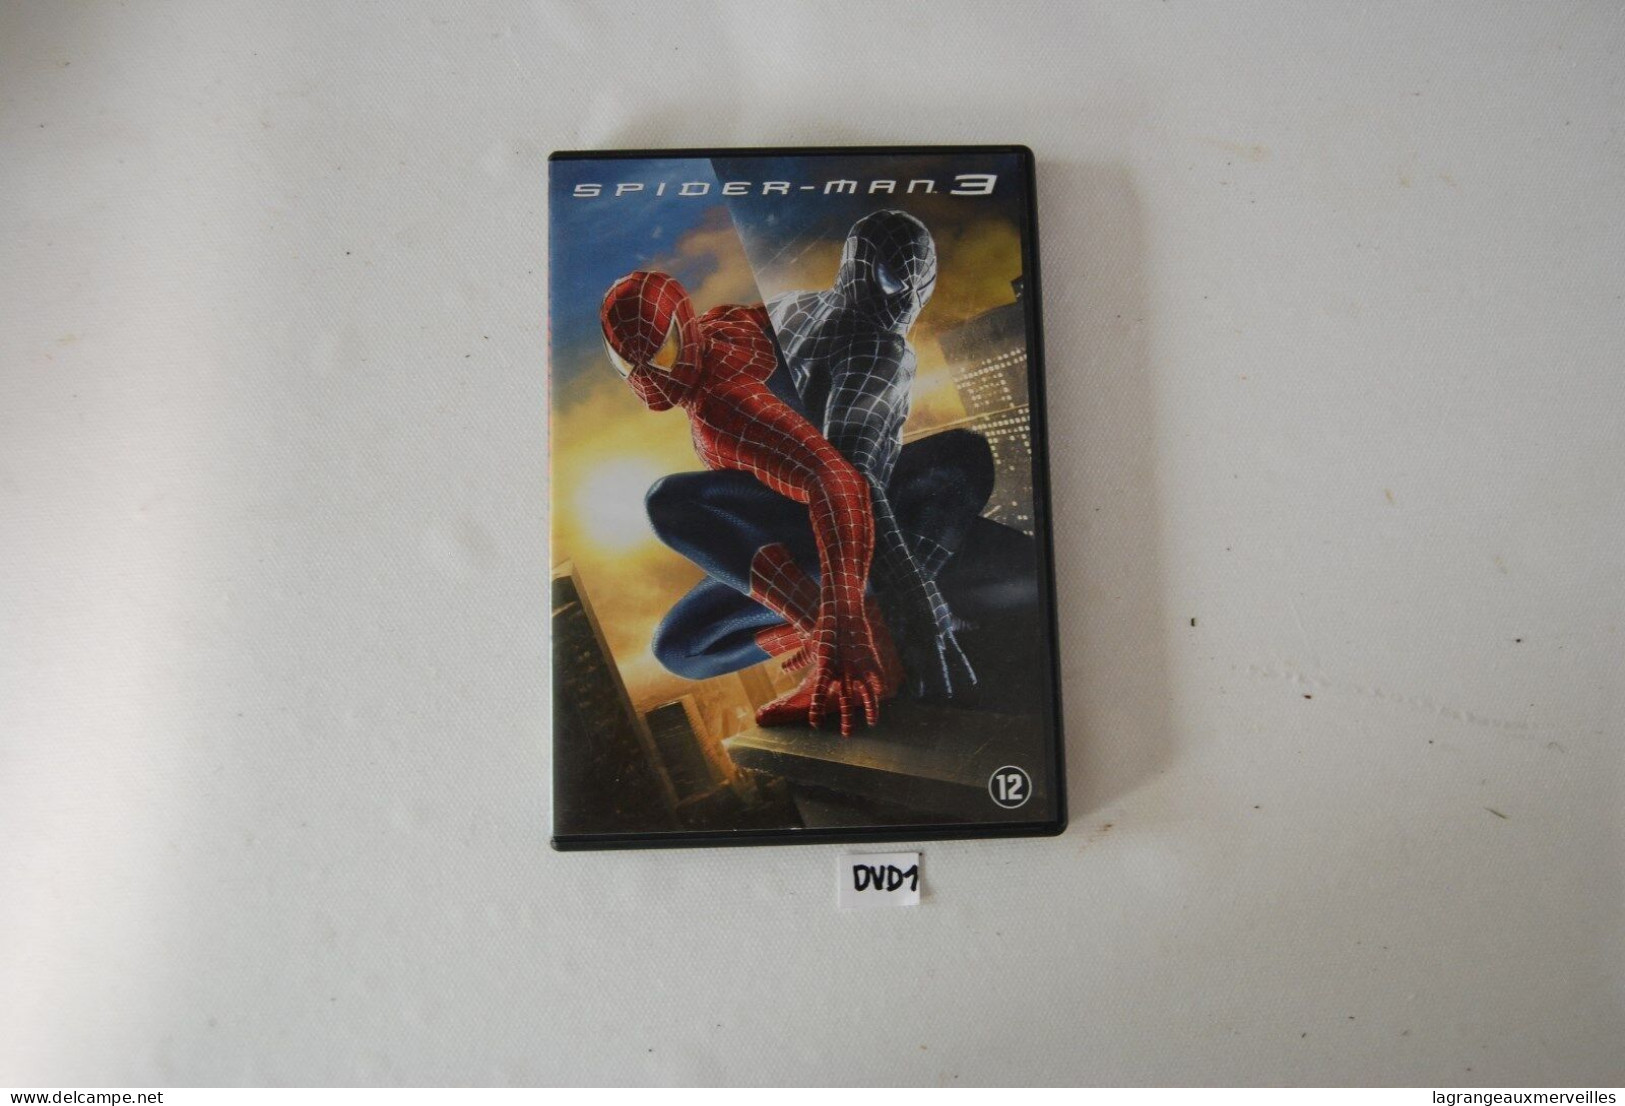 DVD 1 - SPIDER MAN 3 - Action, Aventure